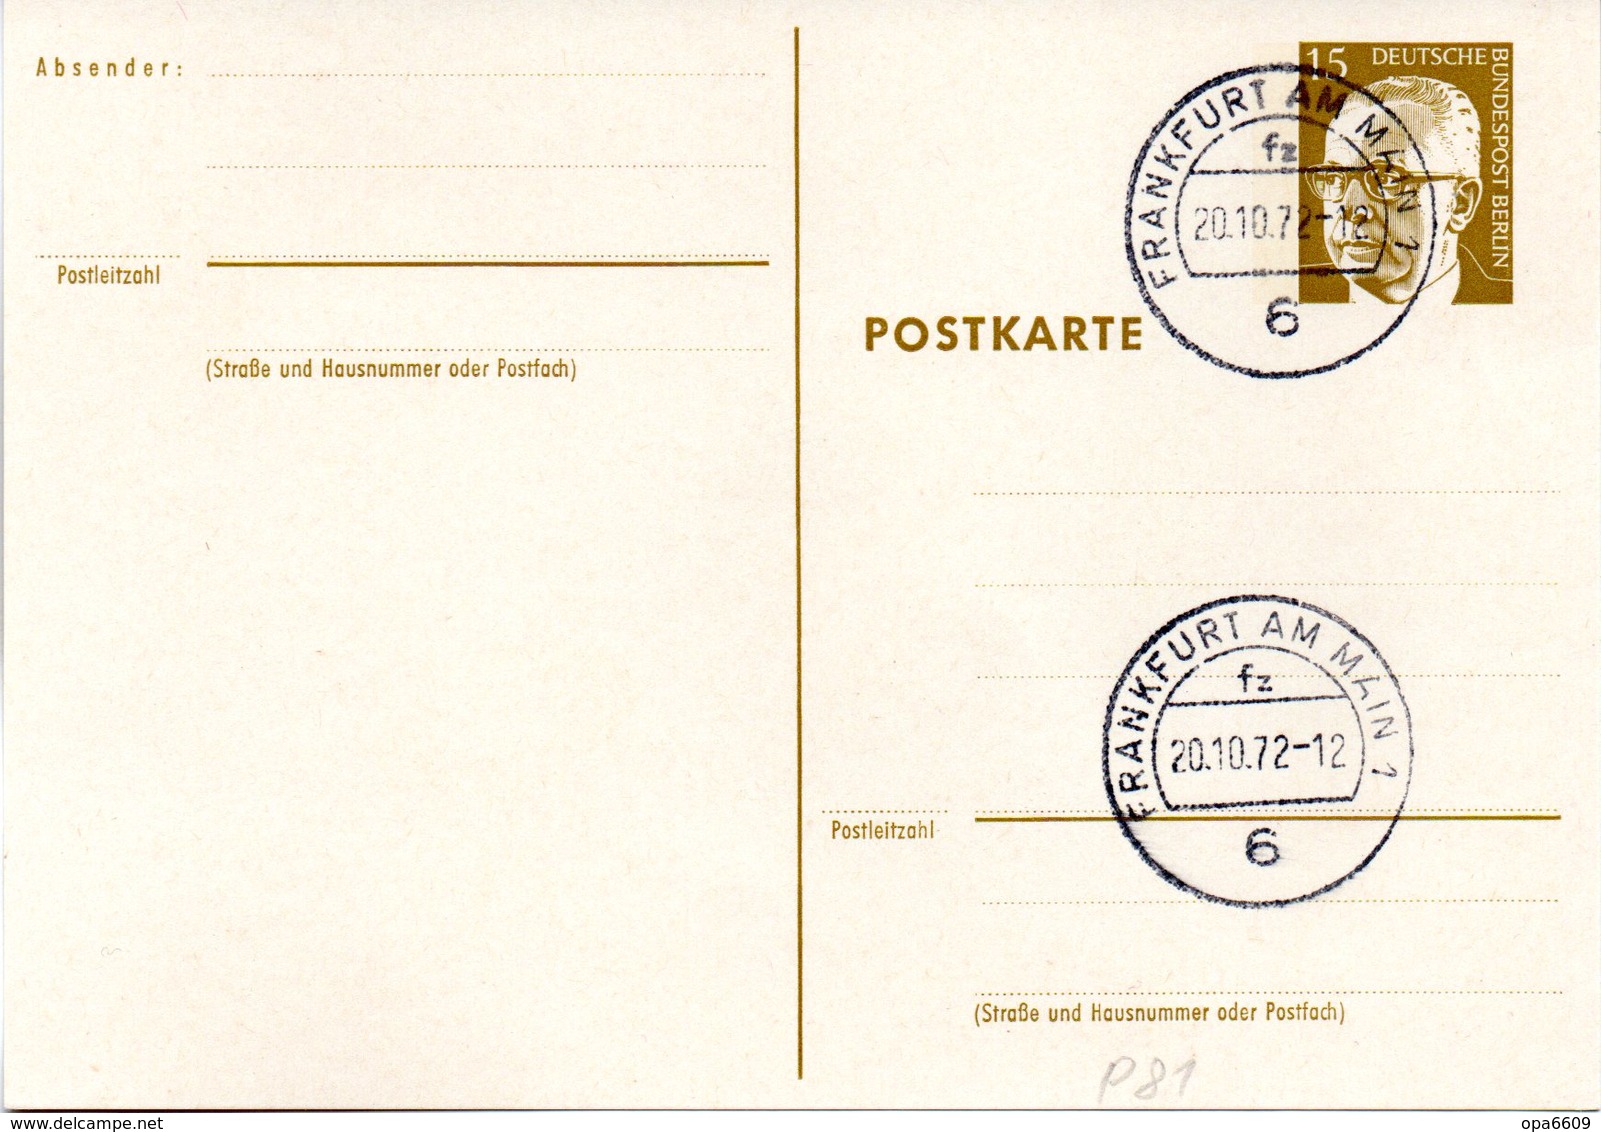 WB Amtl. Ganzsachen-Postkarte P81 Wst. "Heinemann" 15(Pf) Braunoliv, Blanko TSt 20.10.72 FRANKFURT AM MAIN 1 - Postcards - Used